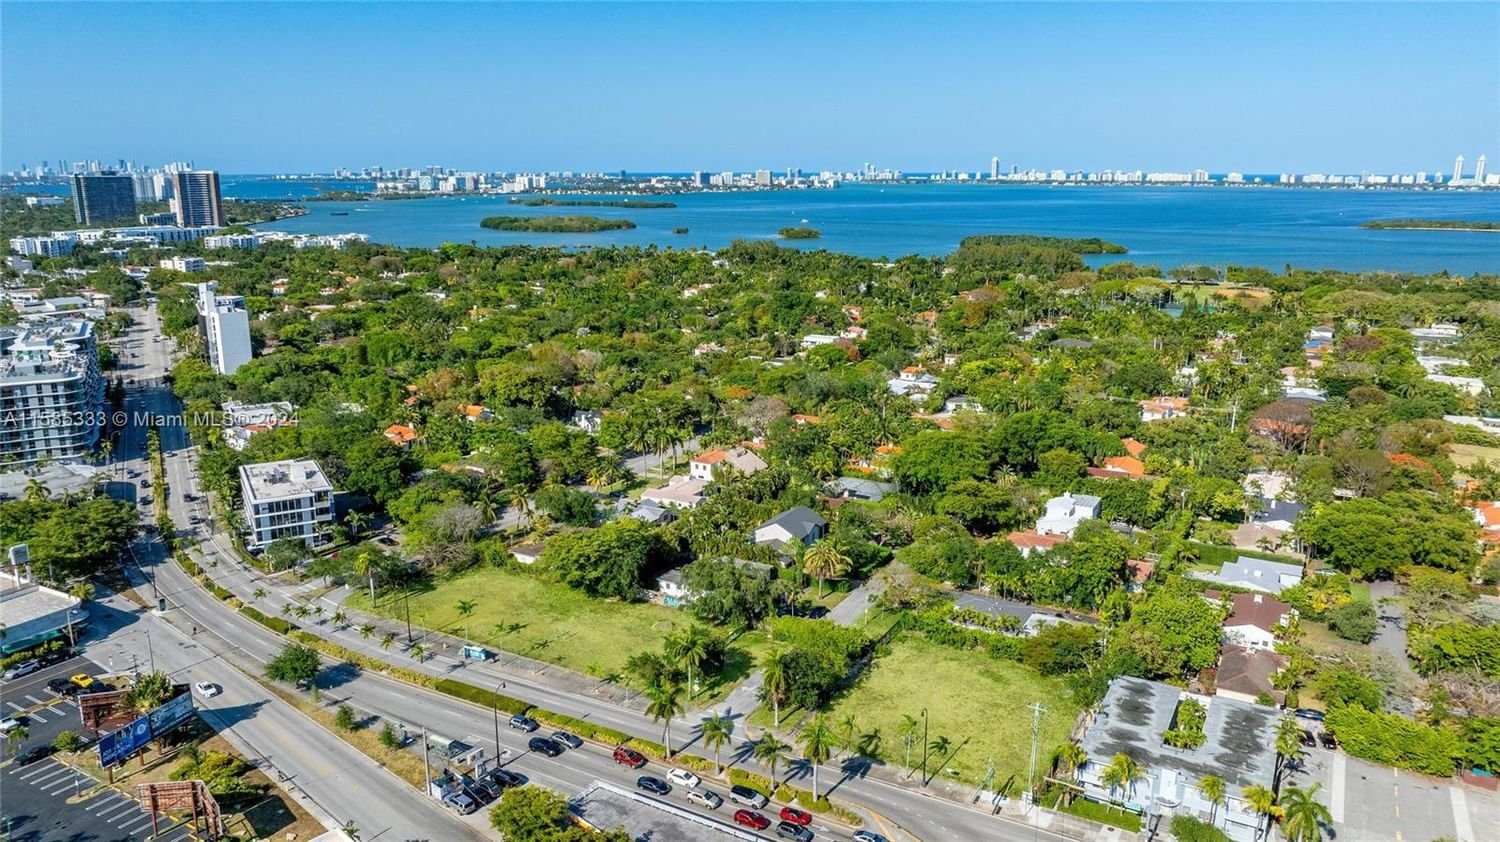 Real estate property located at 5501 Biscayne Blvd, Miami-Dade County, BAYSHORE PLAZA, Miami, FL